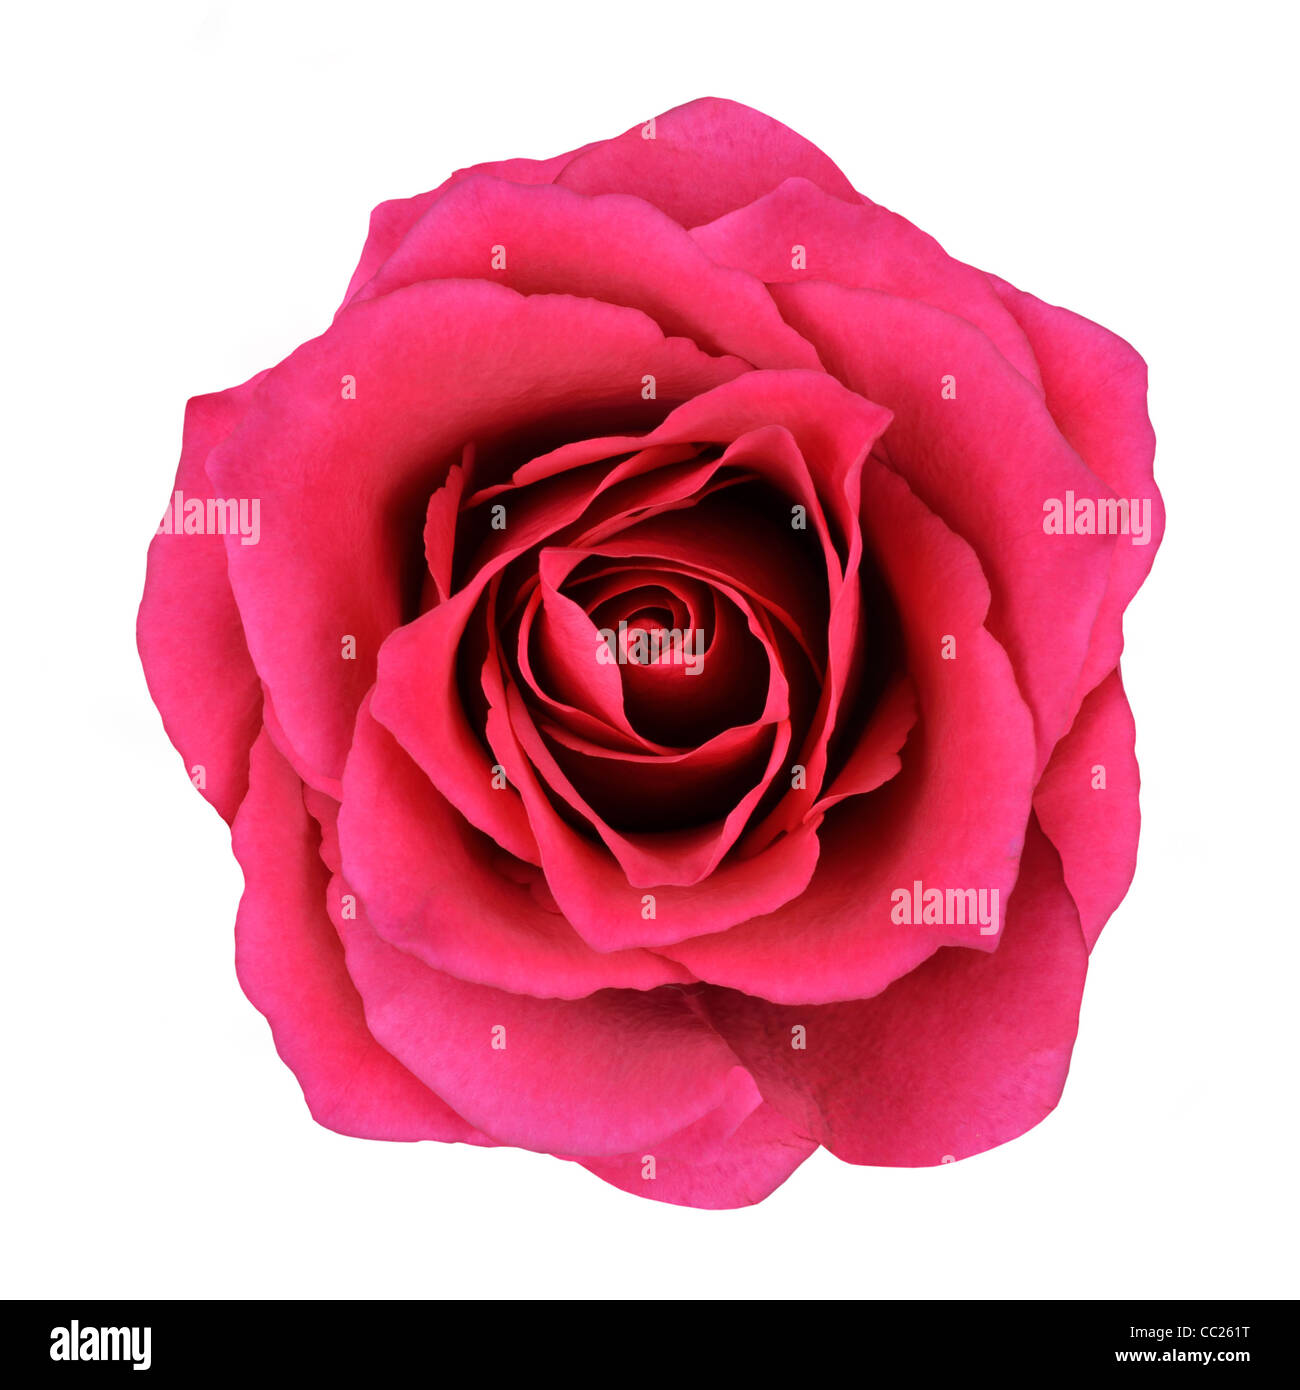 Rote Rose Blume Isolated on White Background. Draufsicht auf schöne rote Rose Blume Stockfoto